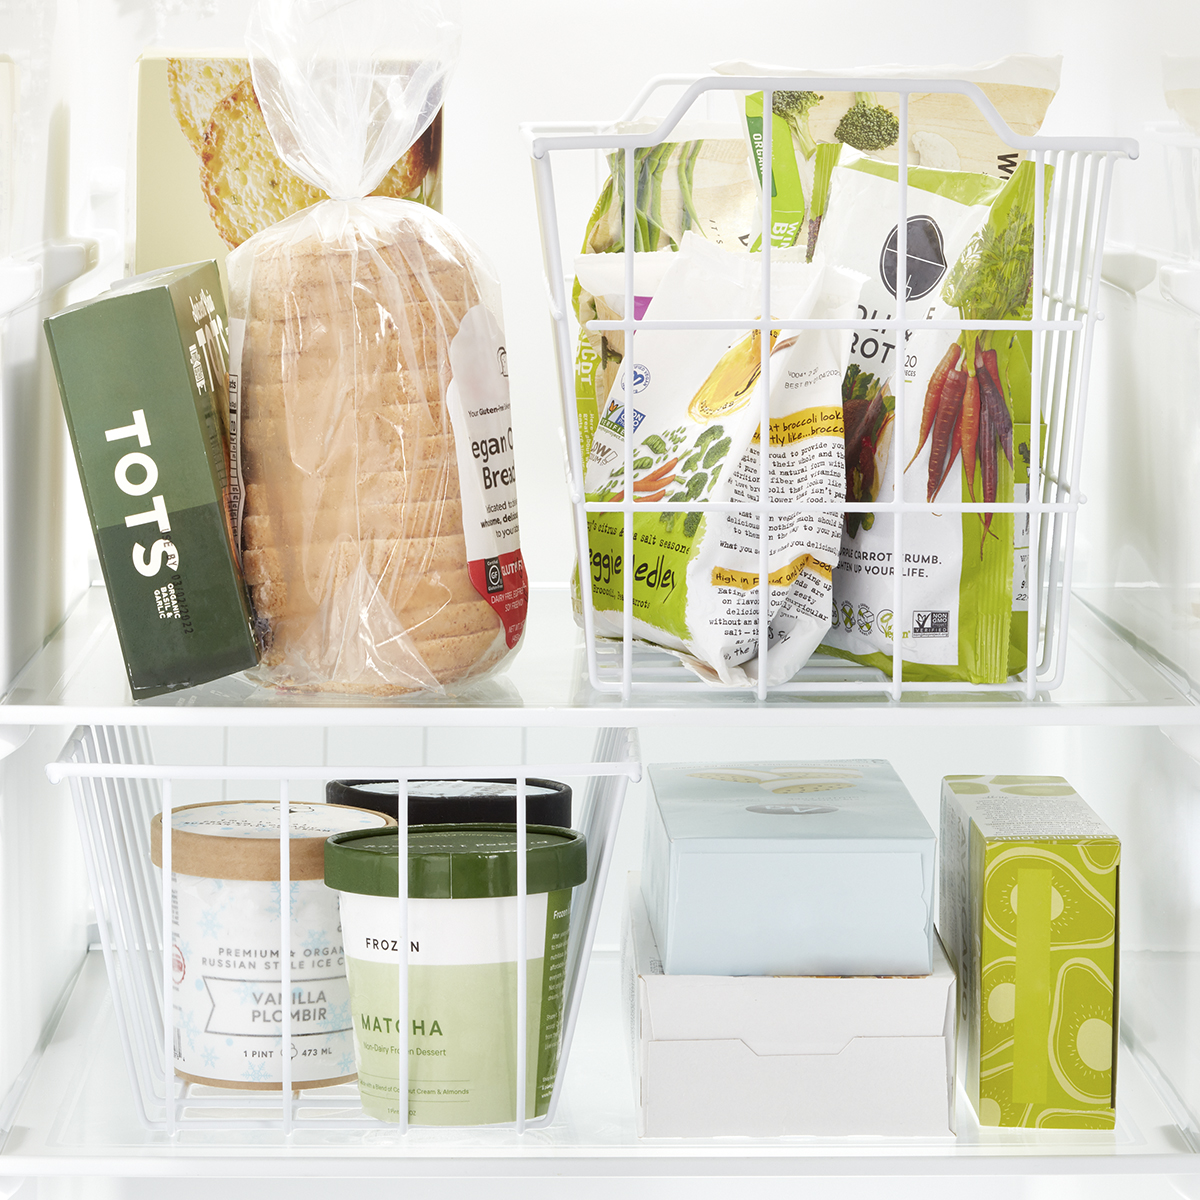 SANNO Chest Freezer Storage Basket Bins Organizer With Handles For Kitchen x2 